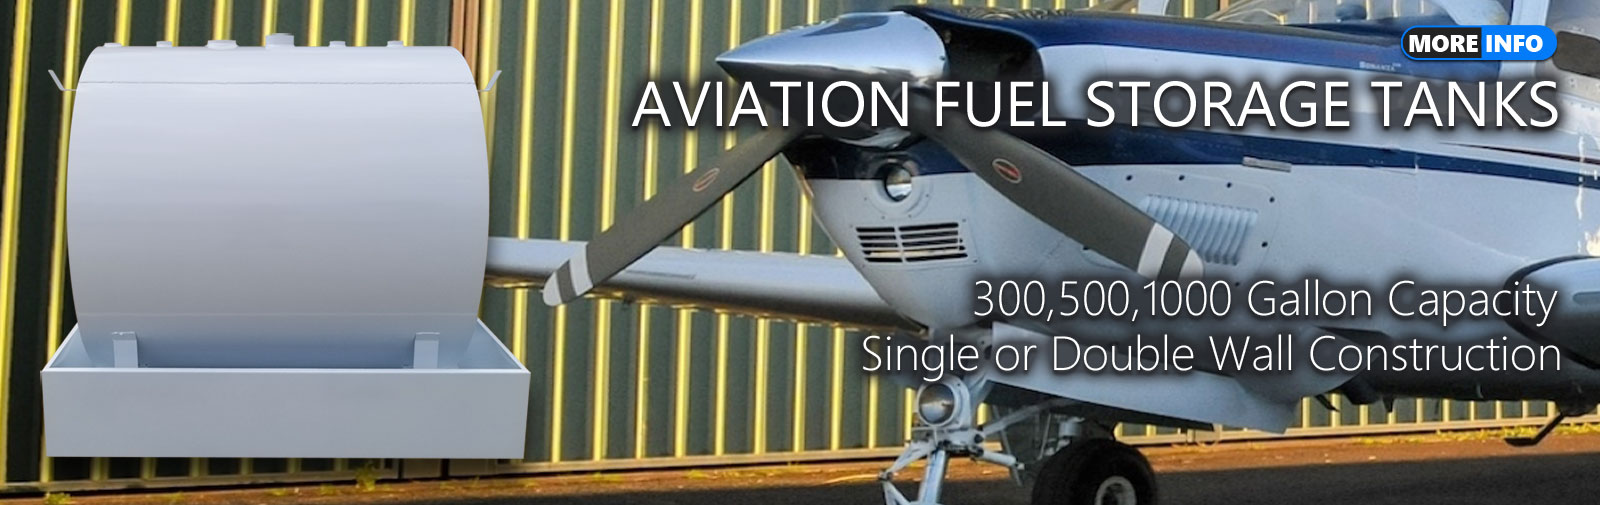 Aviation Above Ground Fuel Storage Tanks